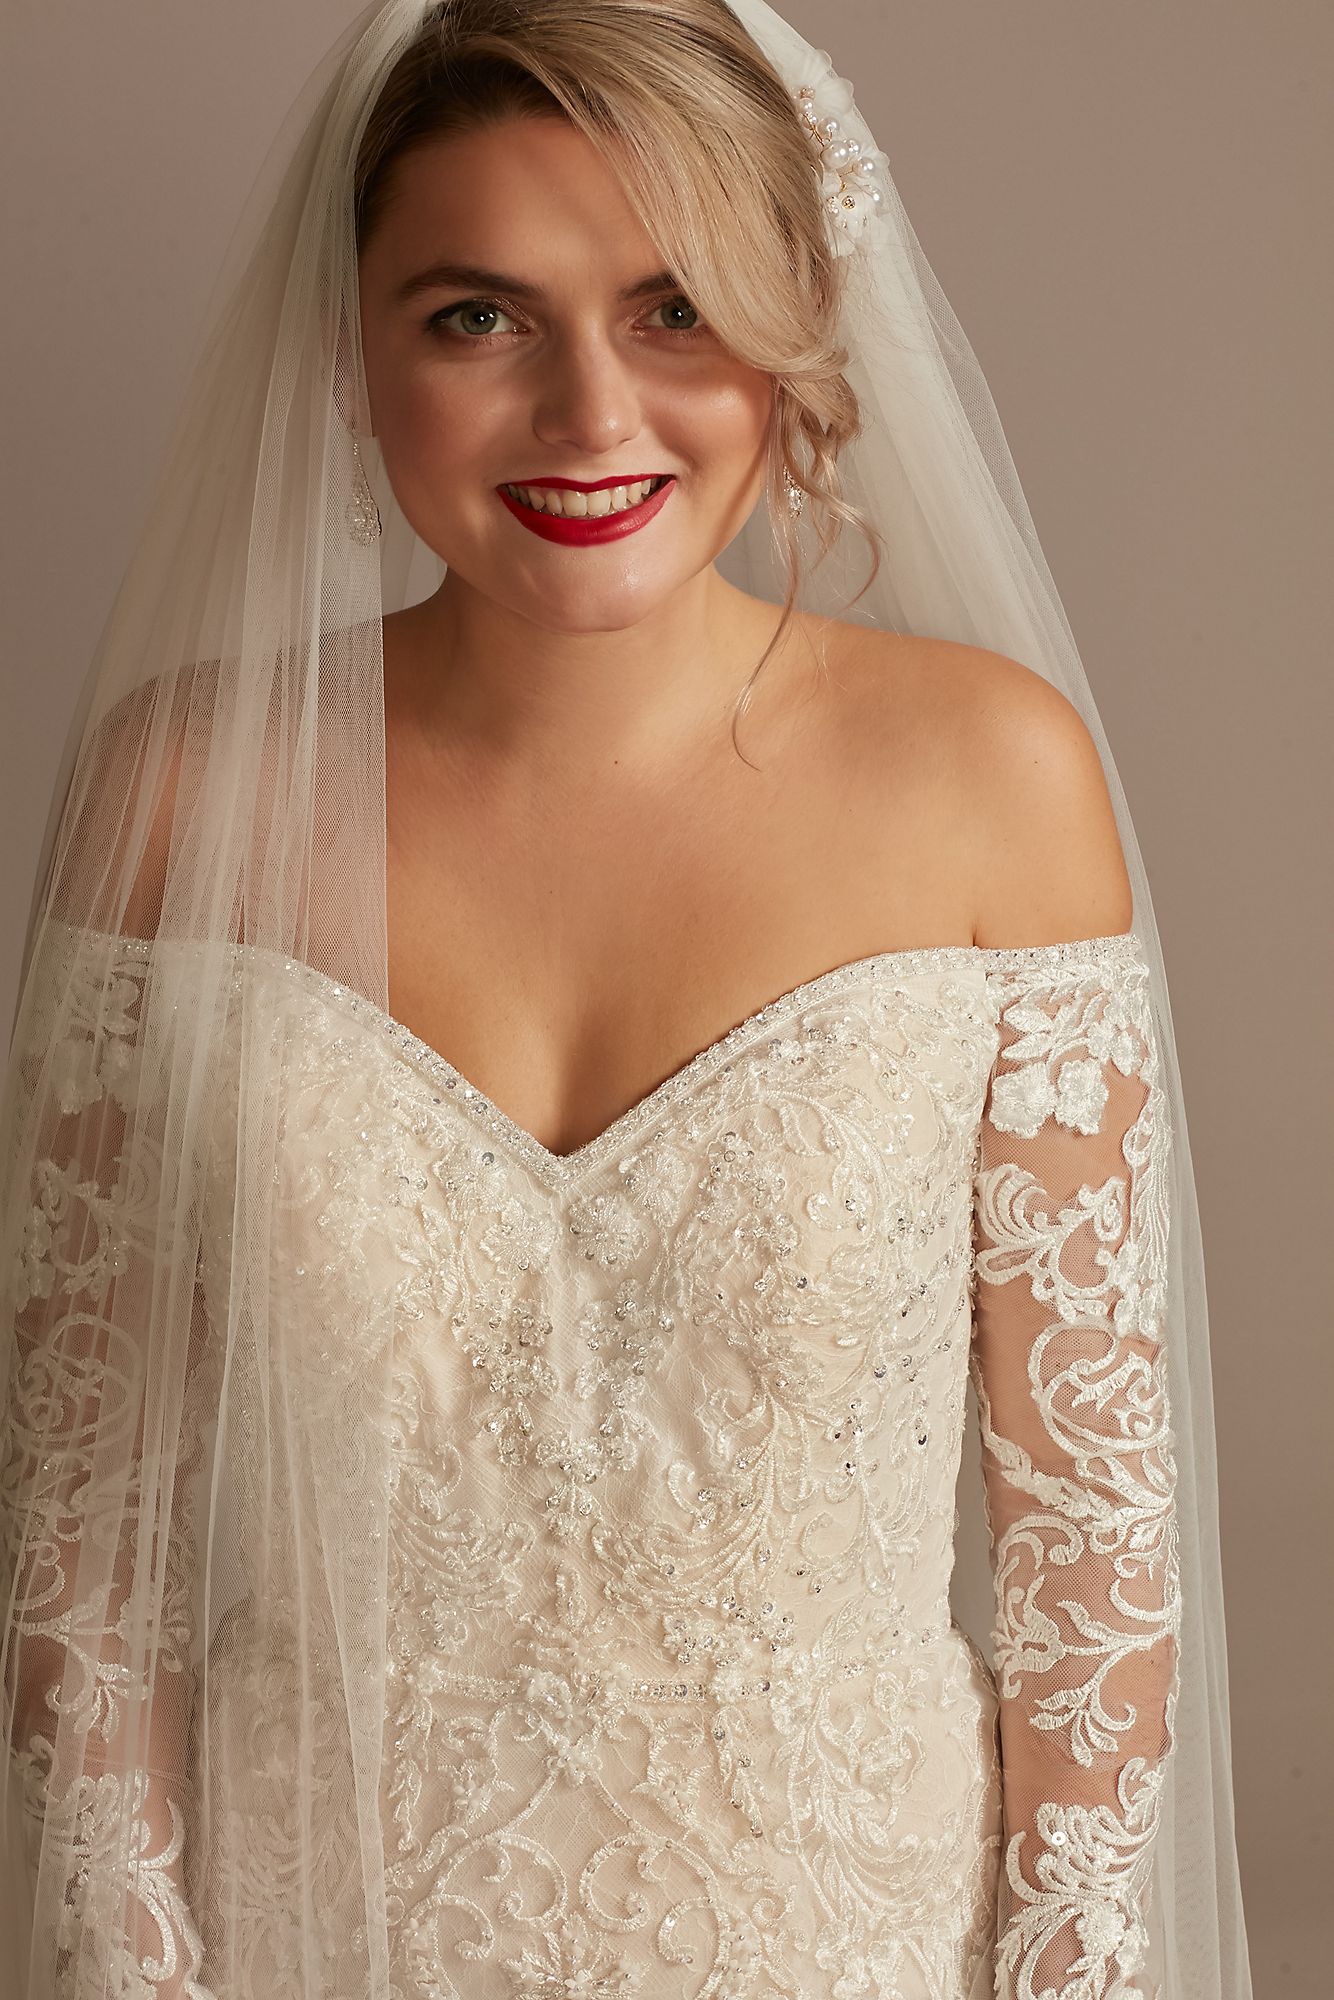 Beaded Lace Long Sleeve Petite Wedding Dress Oleg Cassini 7SLXTCWG808